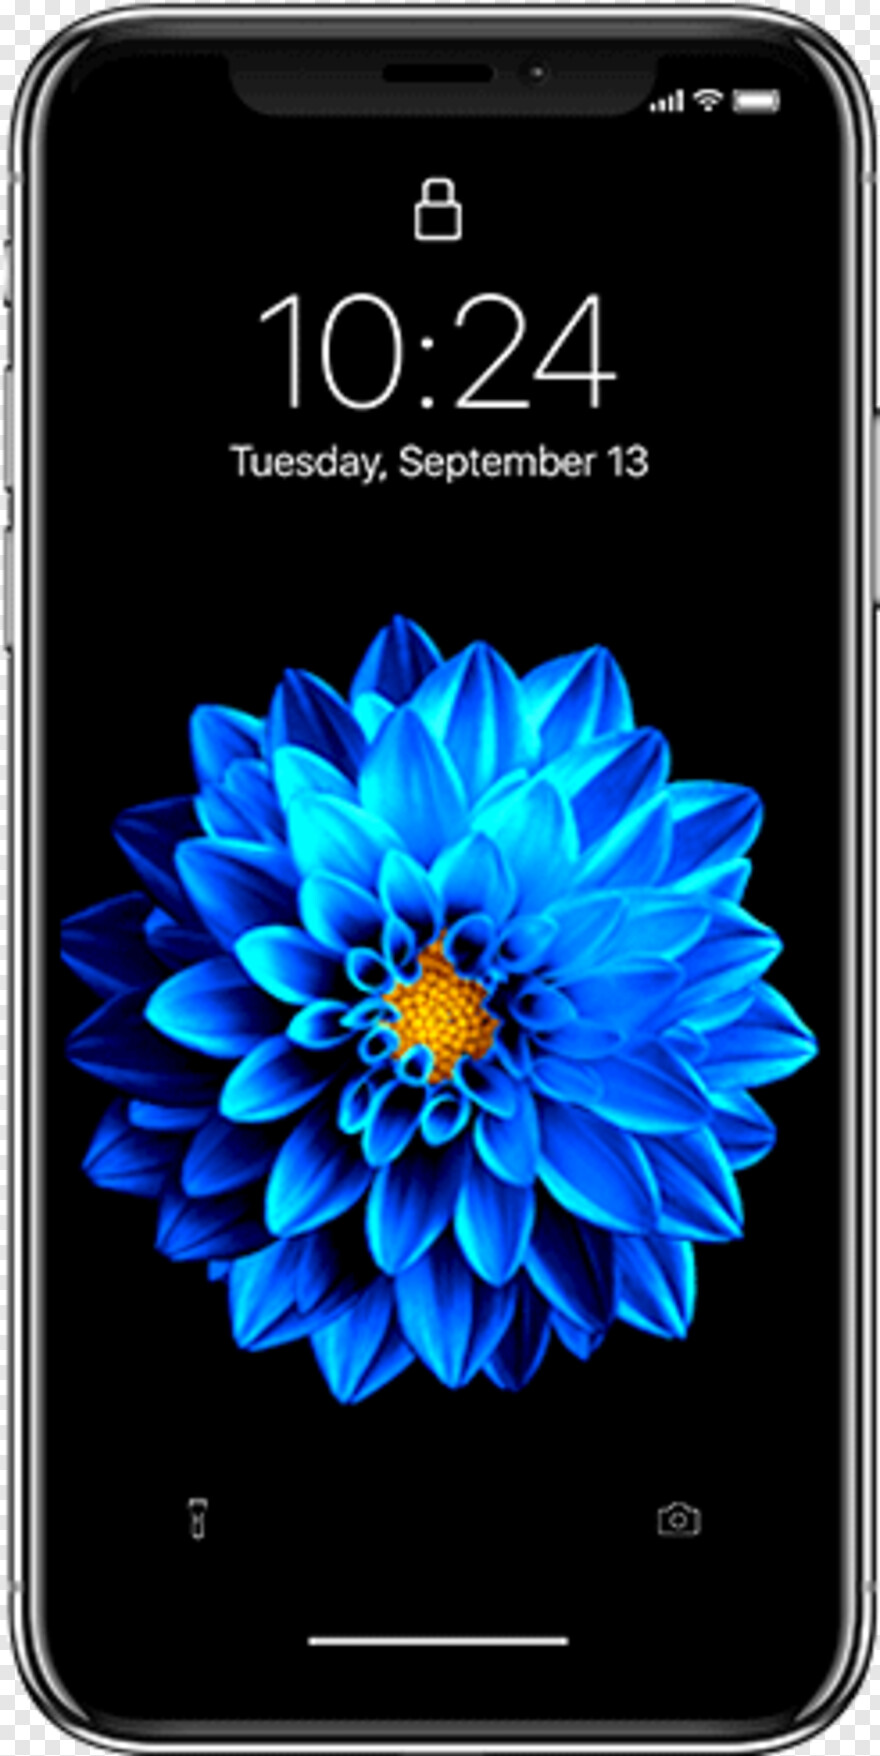 iphone live wallpaper,fiore,testo,petalo,pianta,smartphone